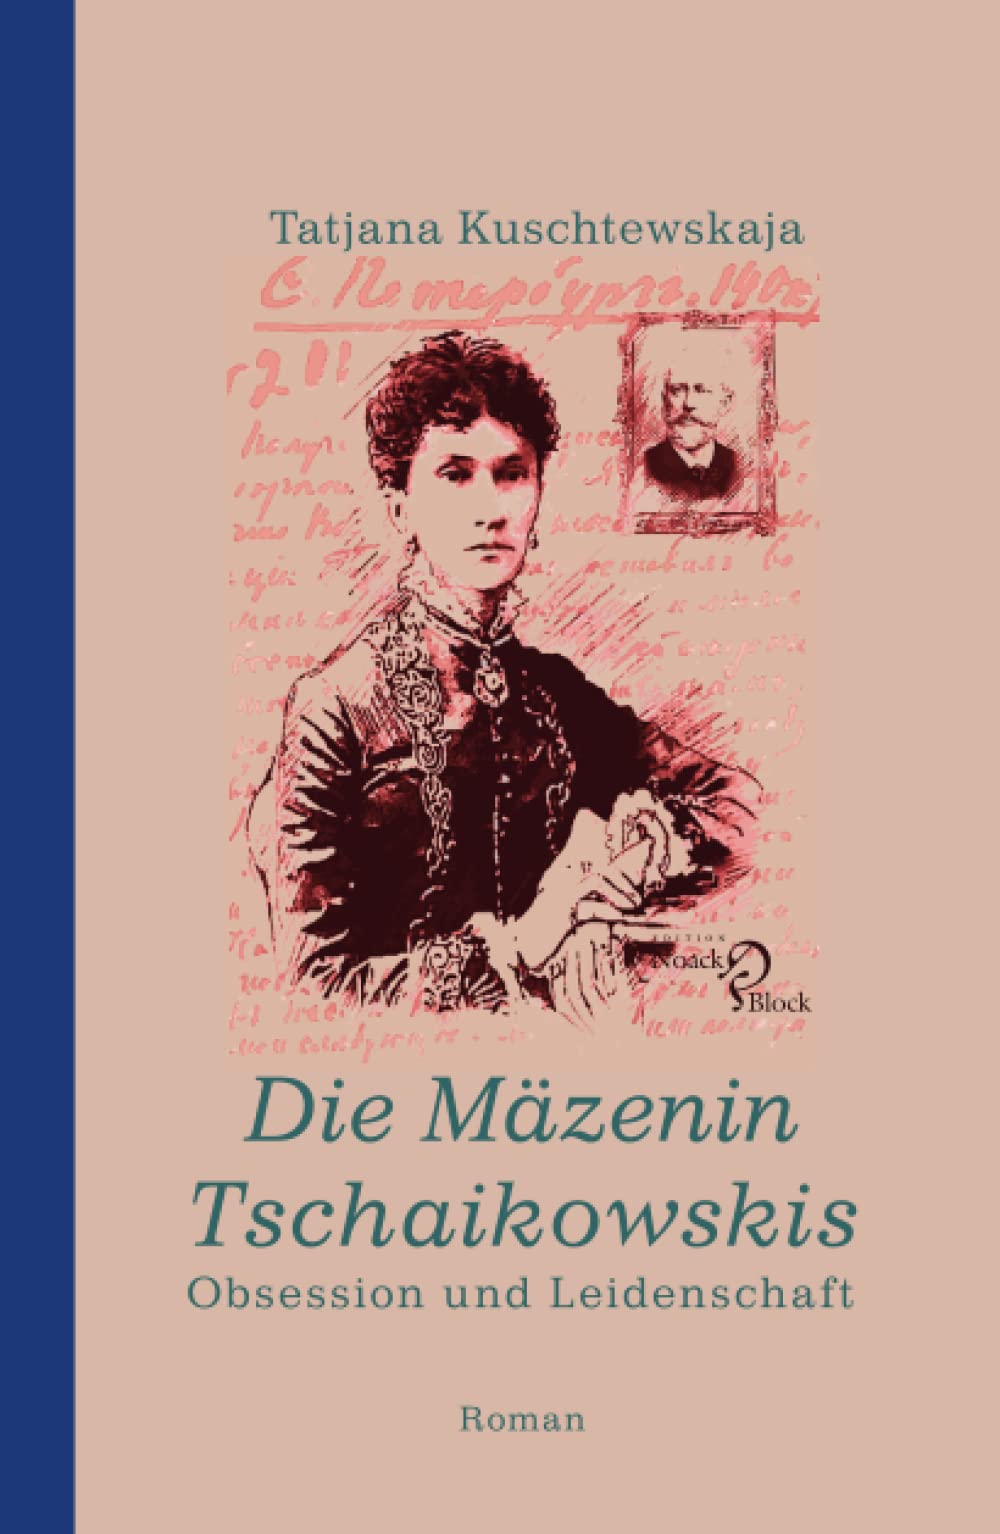 Tatjana Kuschtewskaja: Die Mäzenin Tschaikowskis